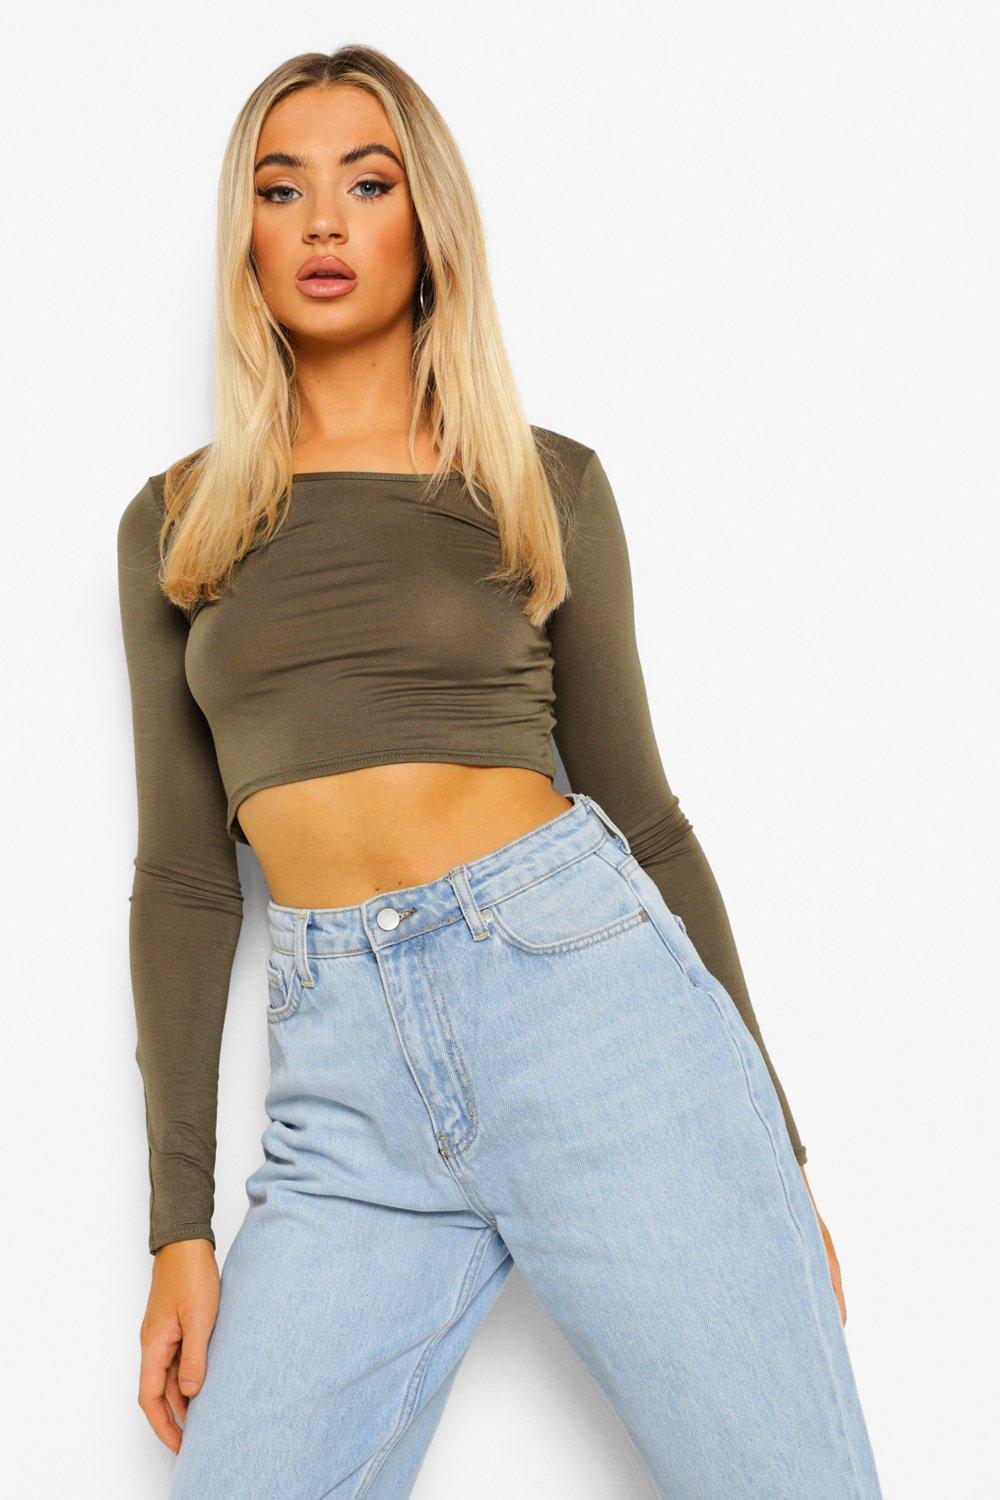 X-Future Womens Pullover Slim Hoodie Long Sleeve Crop Top Sweatshirt Tops 